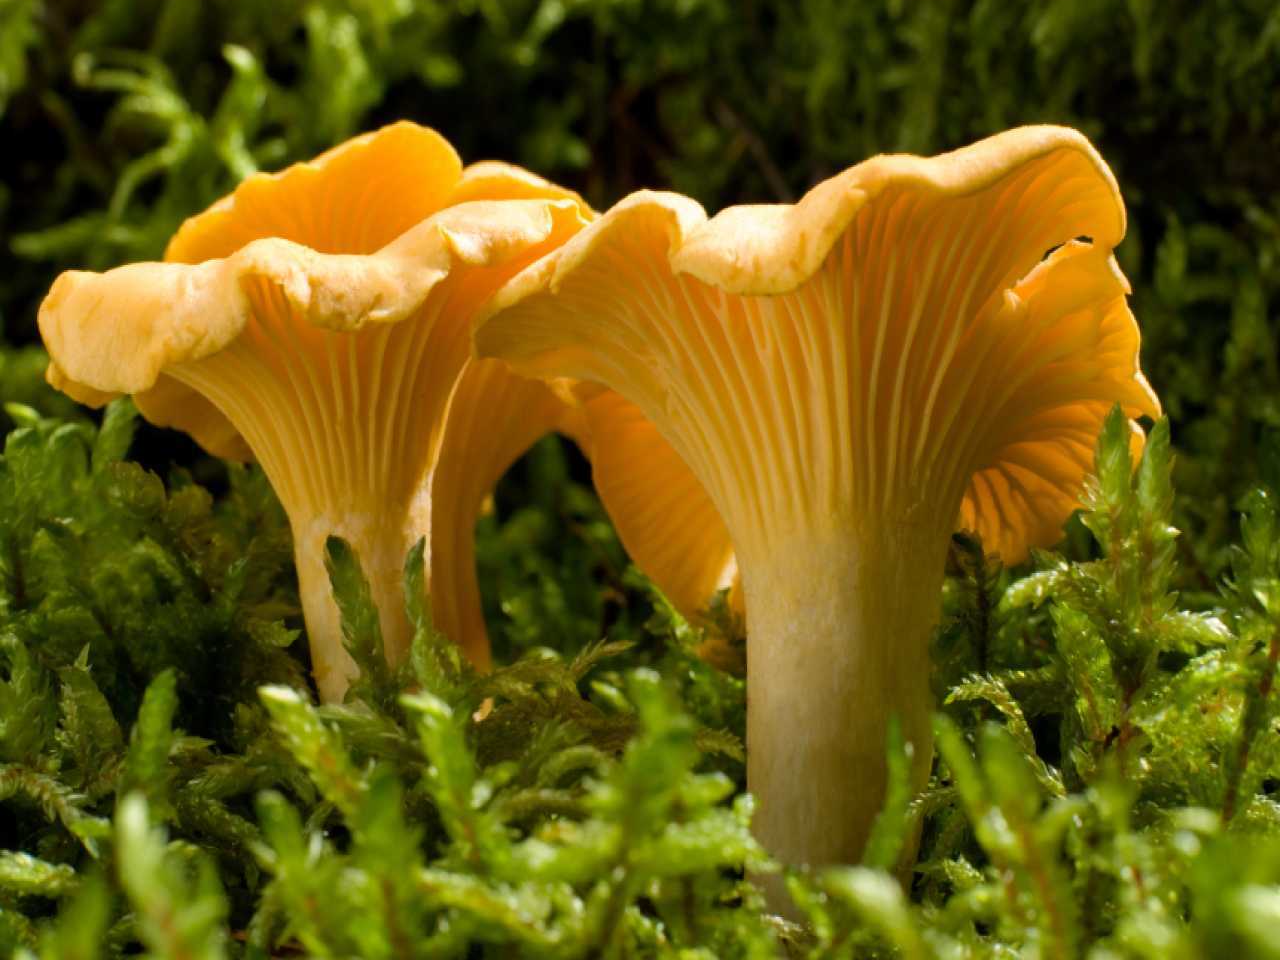 Латинское название гриба – Cantharellus Они относятся к базидиомицетам, классу агарикомицеты, семейству лисичковые, види лисички Свое название гриб получил за рыжий цвет, схожий с окраской лисы Встречается он в смешанных и хвойных лесах